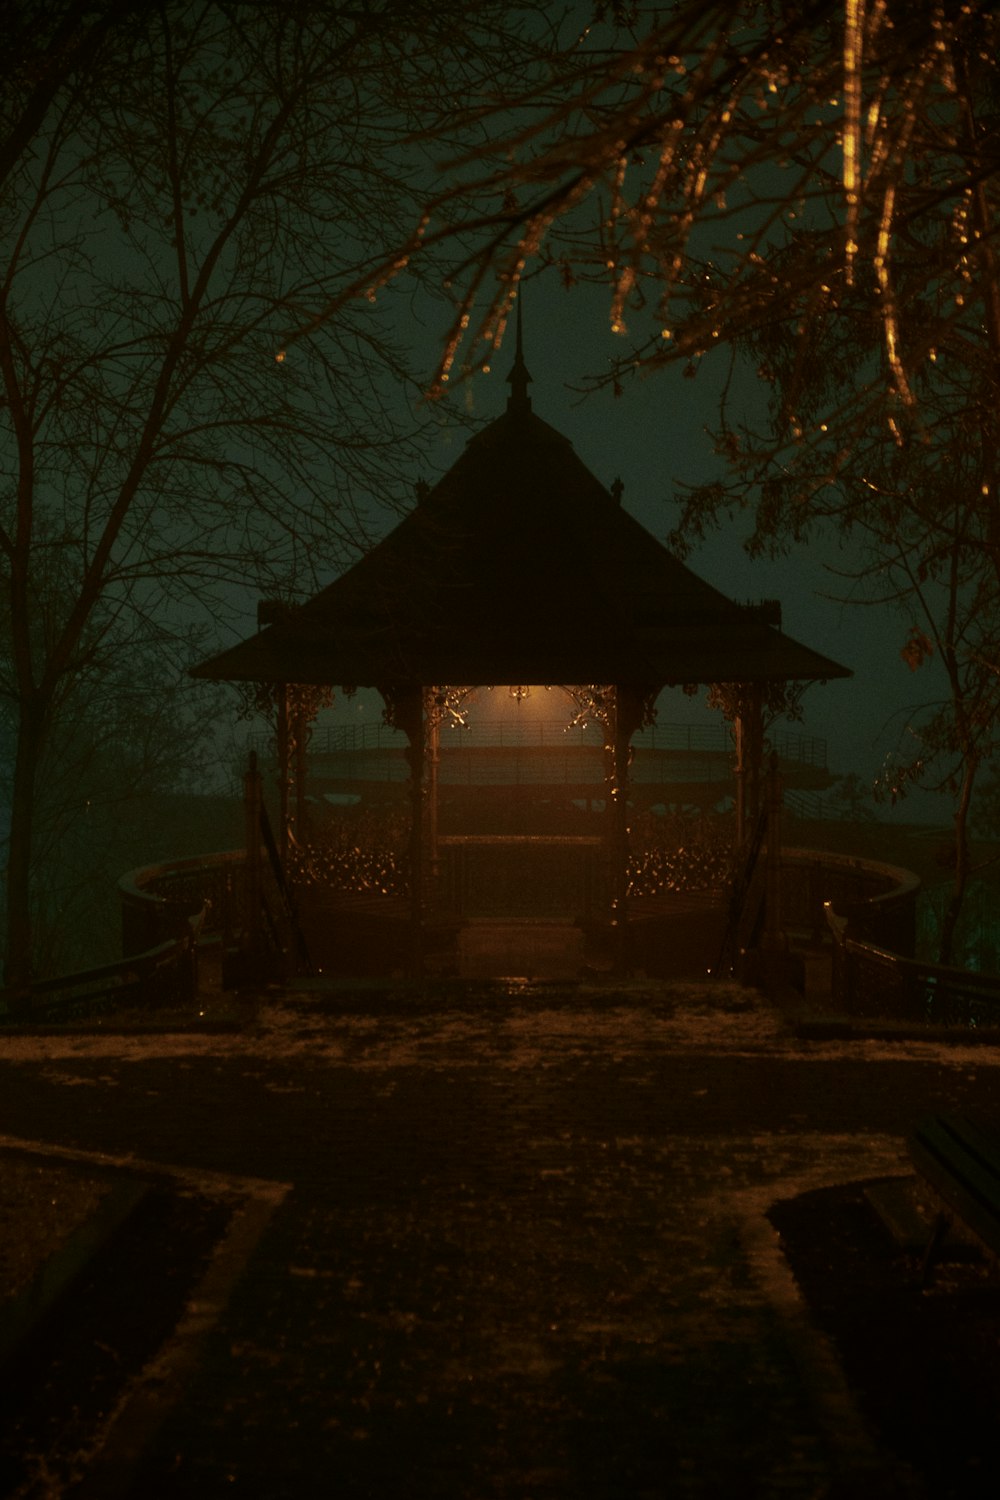 Ein Pavillon mitten in einem Park bei Nacht